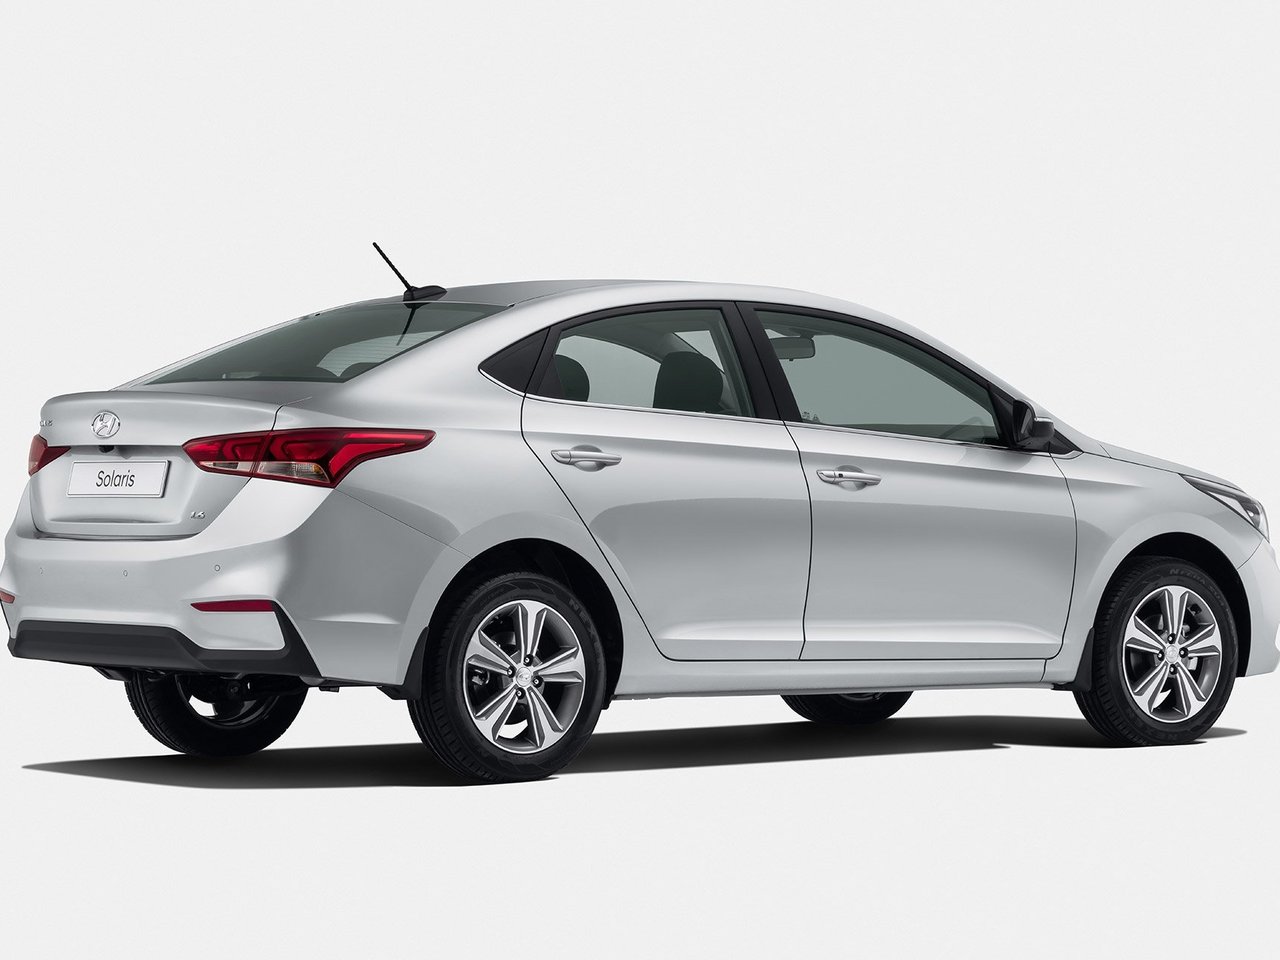 Давление в шинах Hyundai solaris рекомендуемое производителем